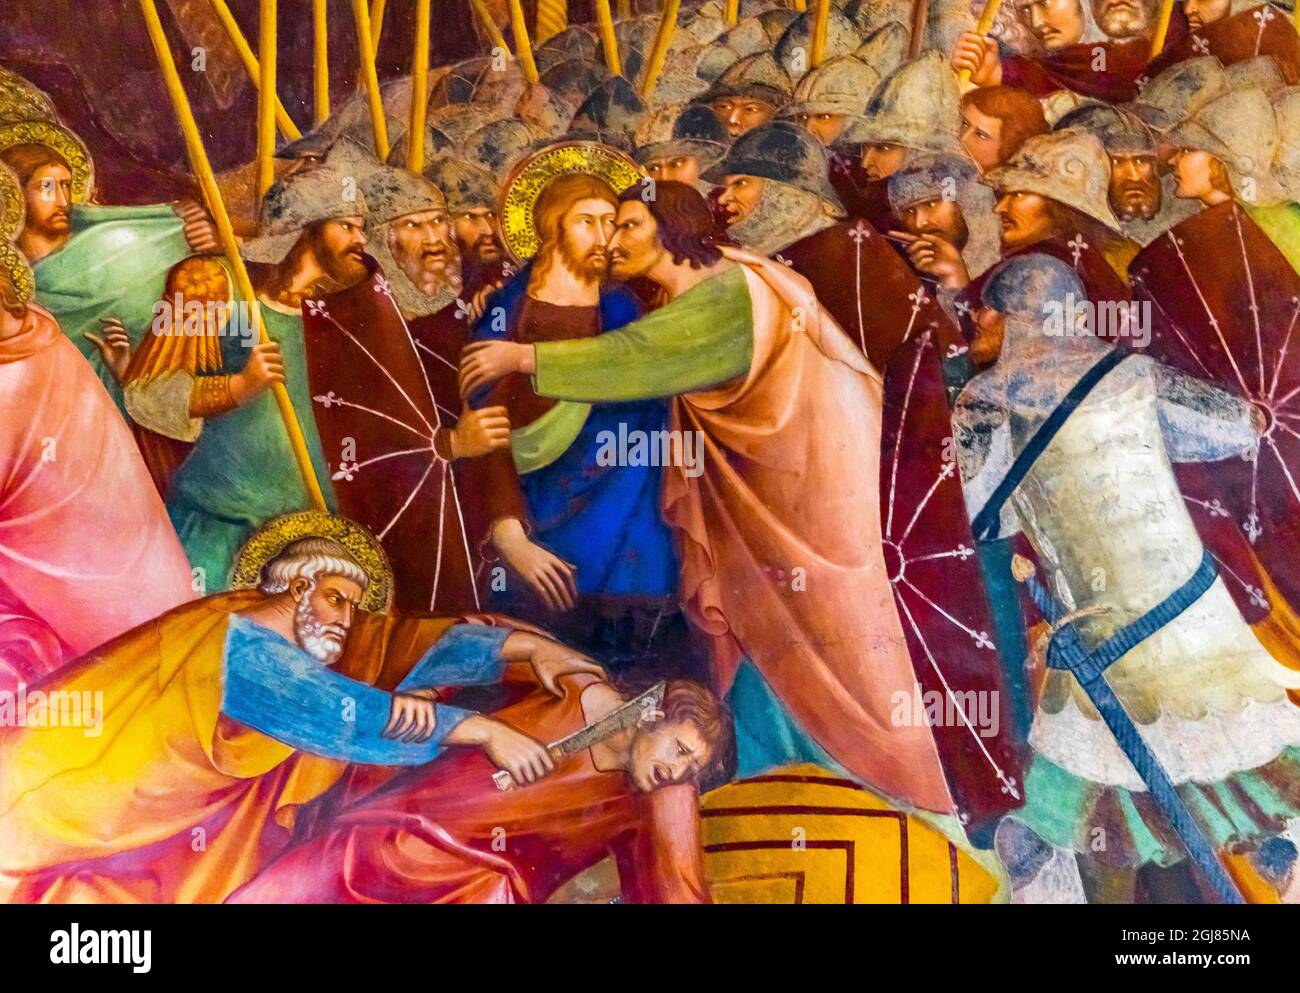 Fresque médiévale de la Renaissance de Judas et Jésus Christ embrassant, Collégiale de Santa Maria Assunta, San Gimignano, Toscane, Italie. De la 1400' Banque D'Images